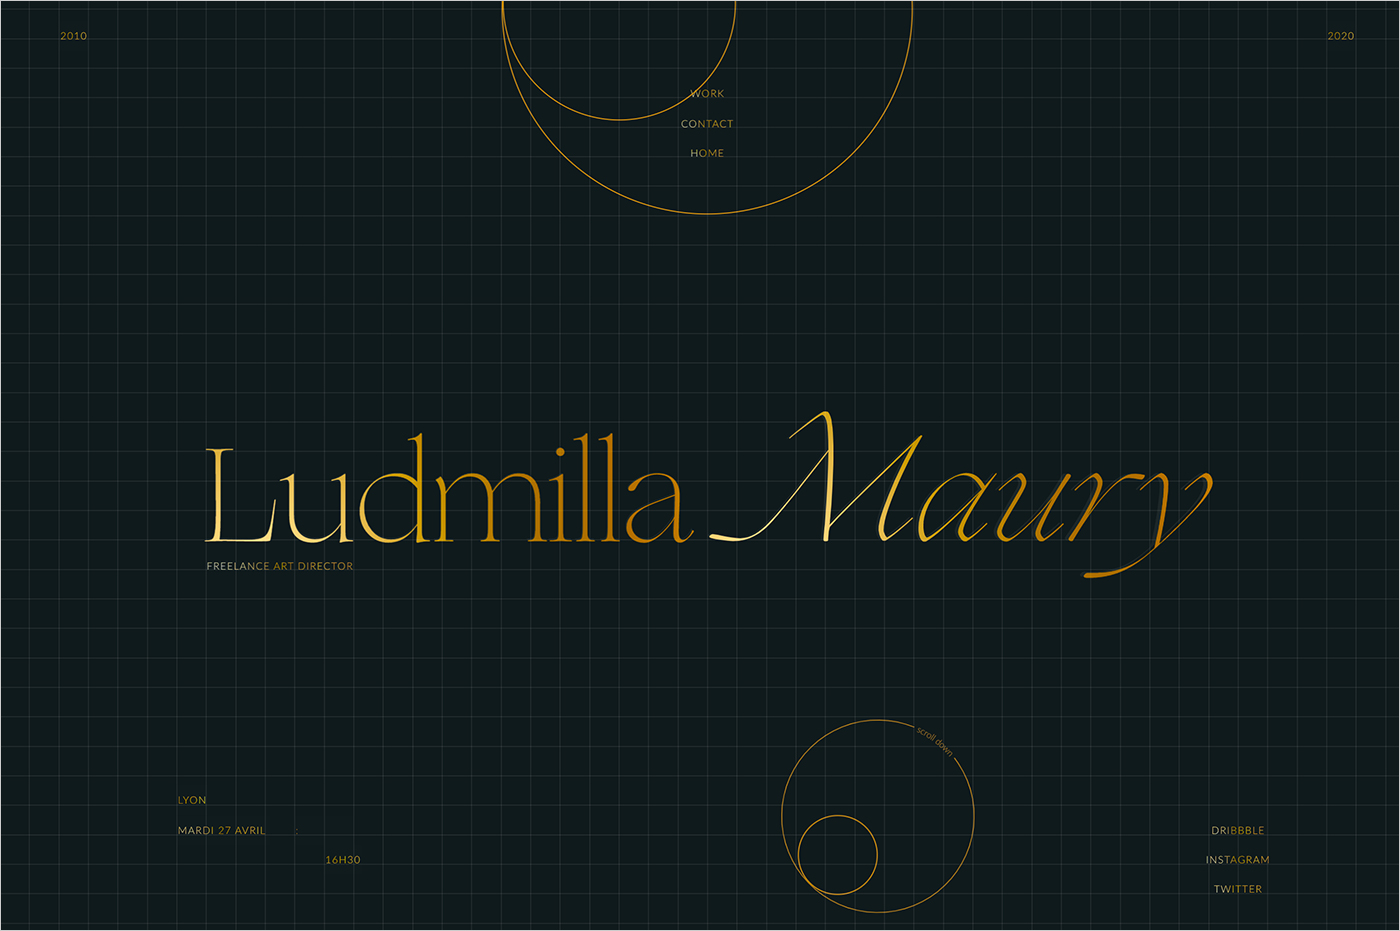 Ludmilla Mauryウェブサイトの画面キャプチャ画像